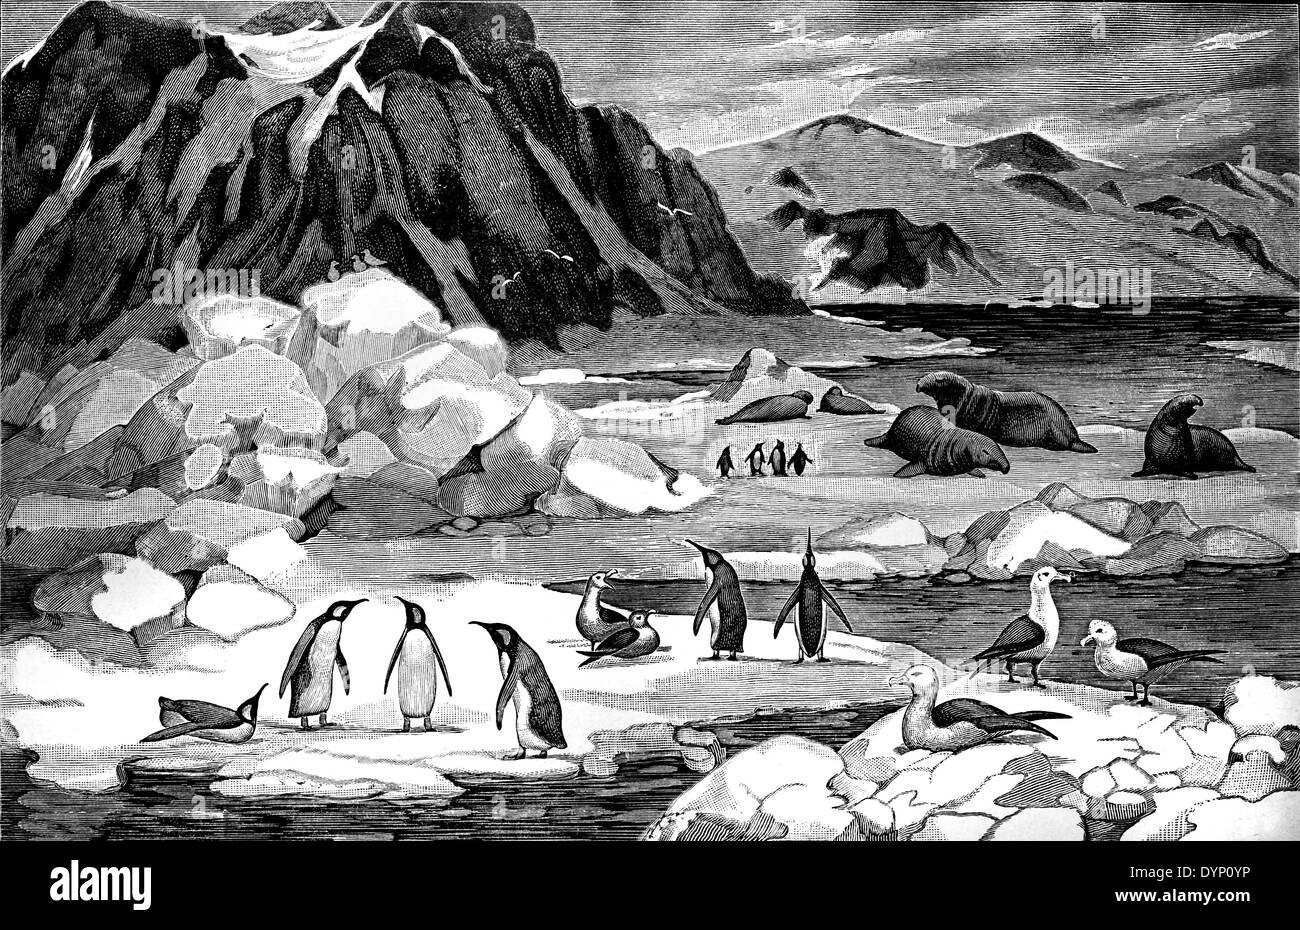 Les animaux typiques de la zone de l'Antarctique, illustration de l'Encyclopédie Soviétique, 1926 Banque D'Images